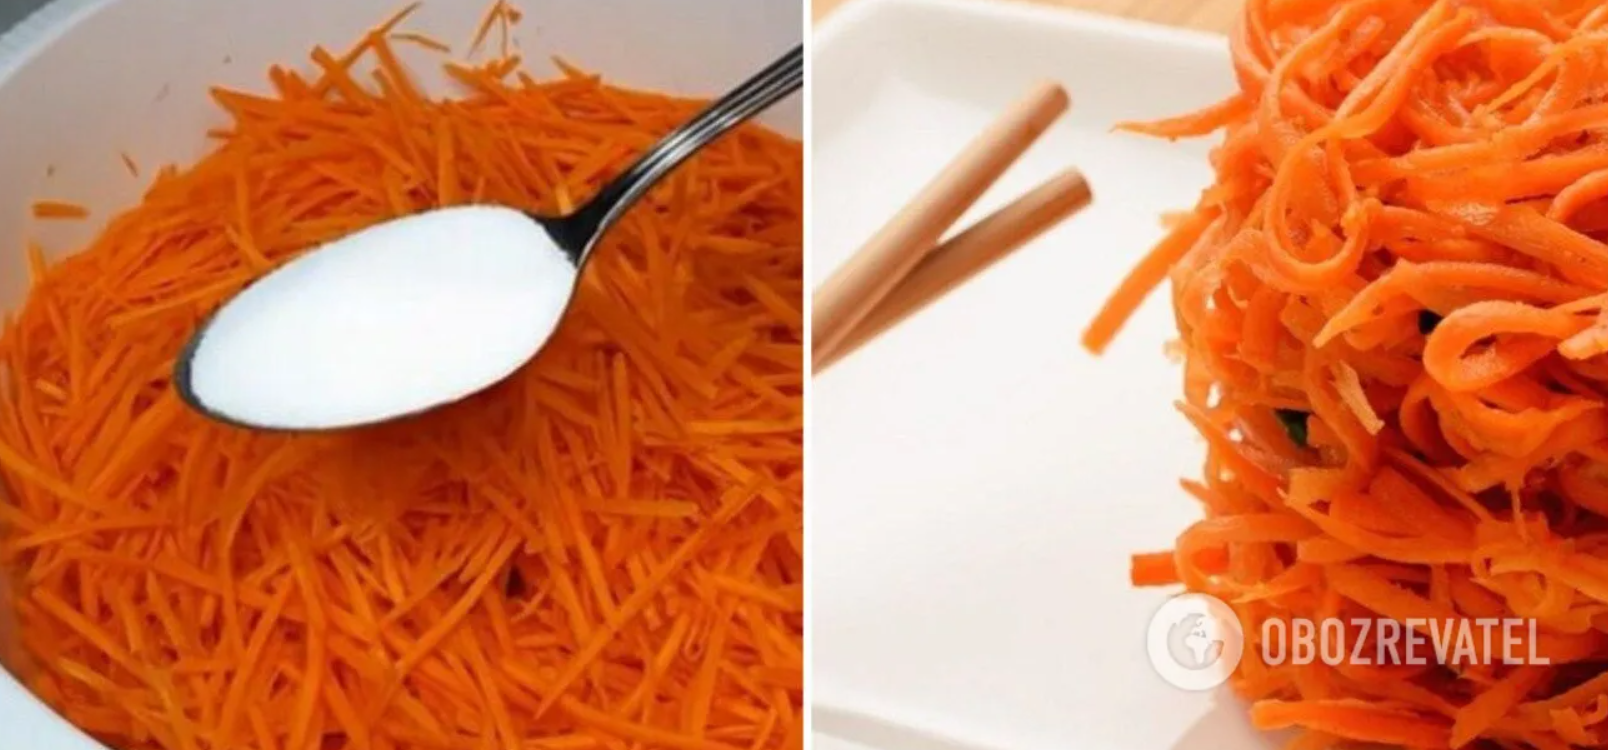 Korean carrot recipe without seasoning